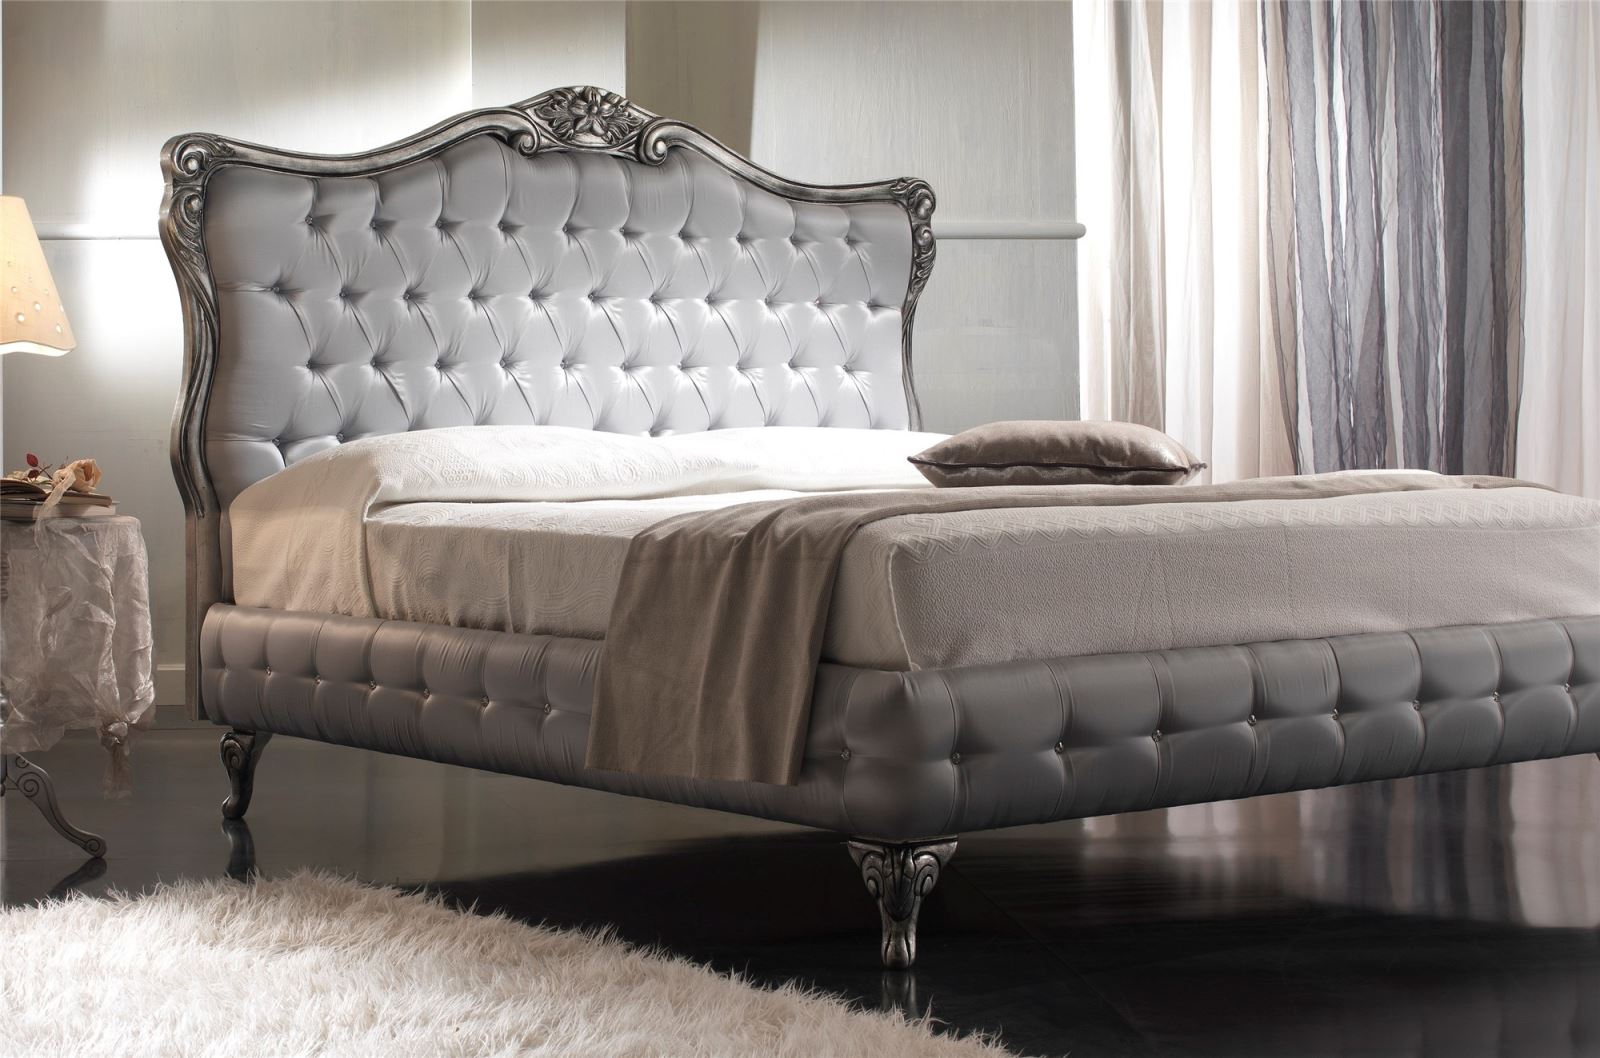 Làm đẹp không gian sống với các thiết kế giường ngủ cổ điển